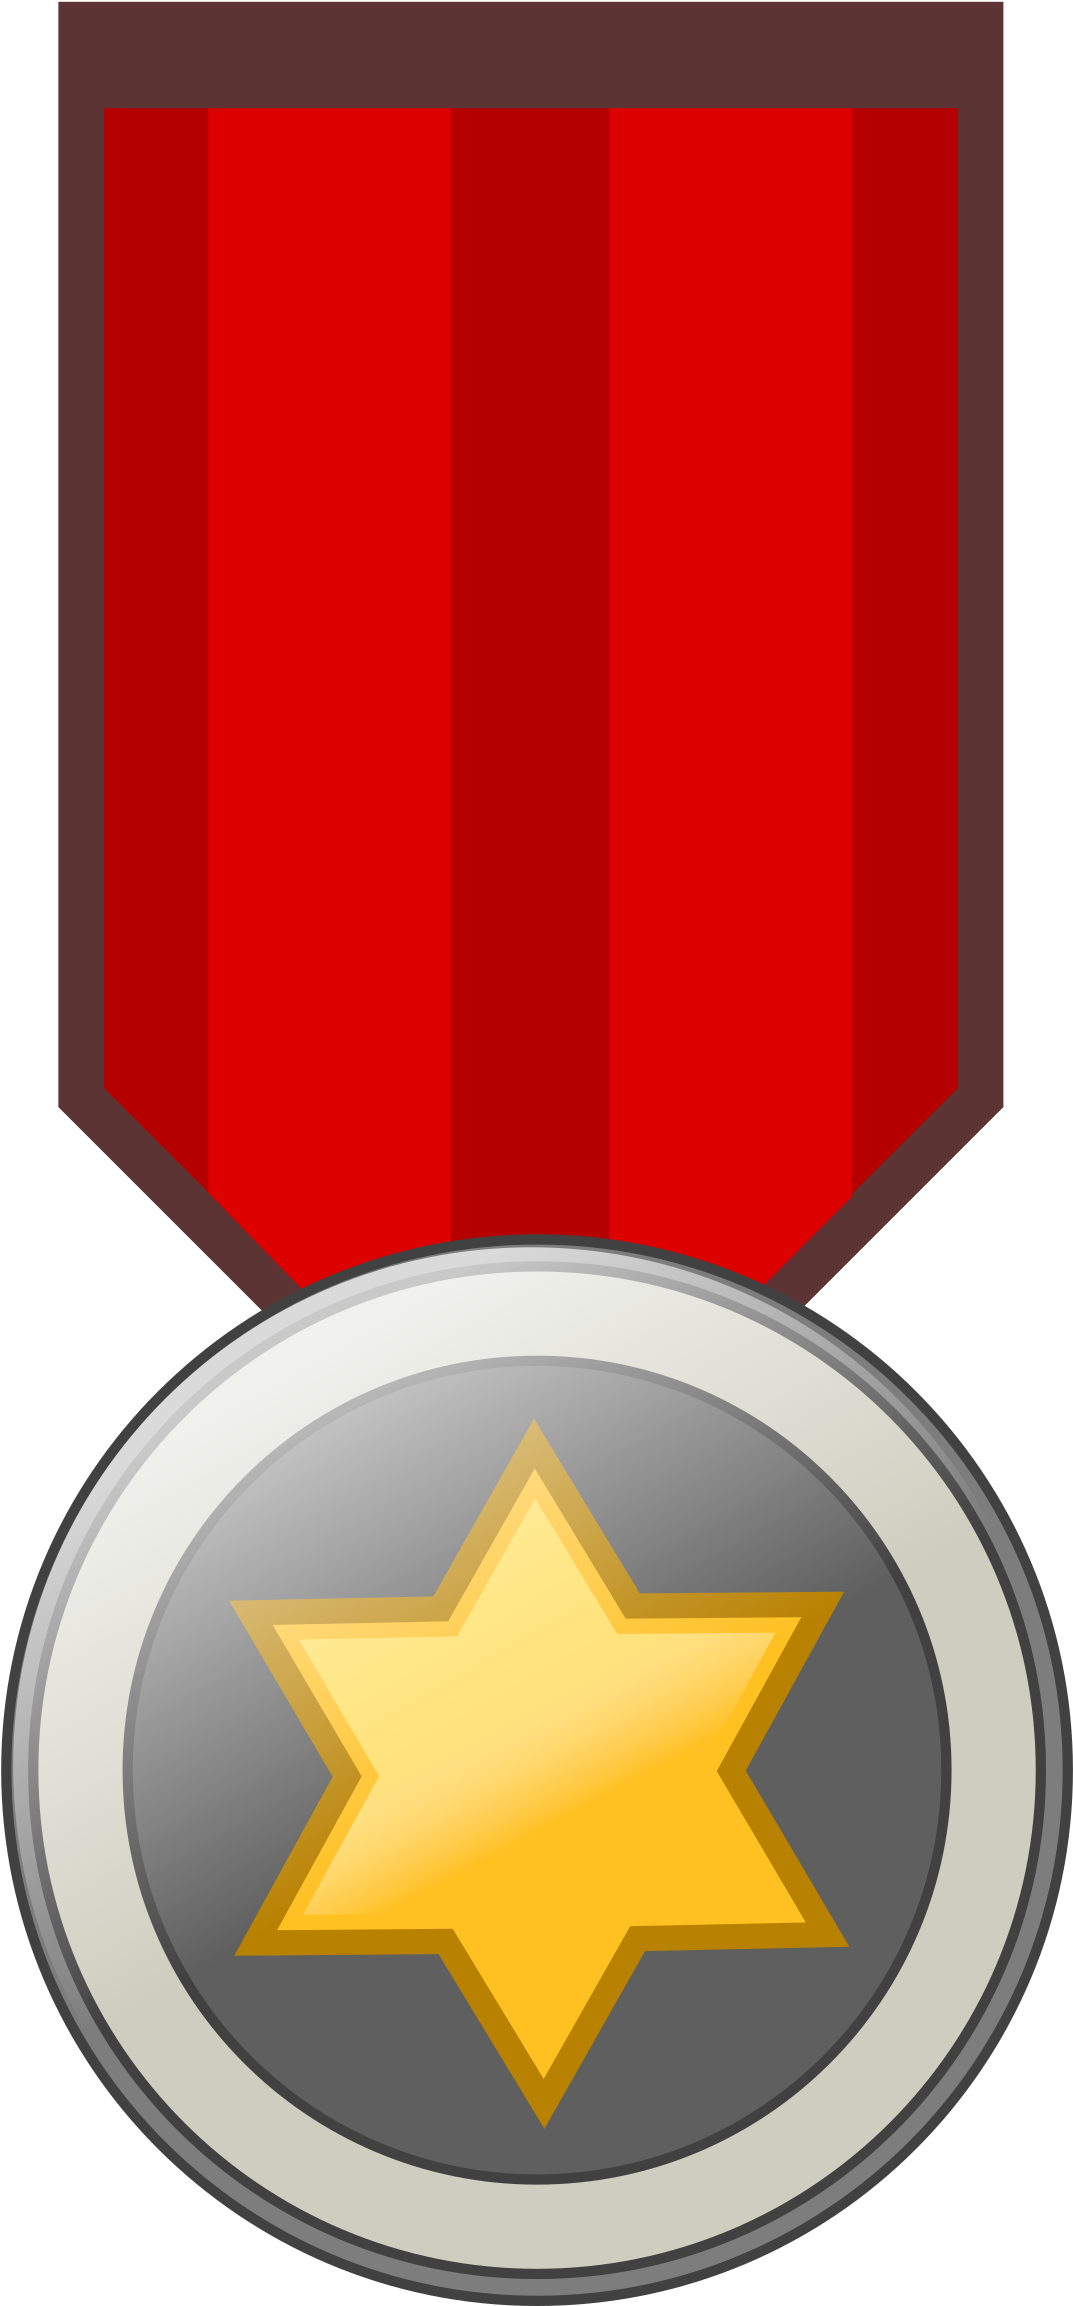 Award Medal Remix Badge - Awards Medal Logo Transparent (1697x2400)